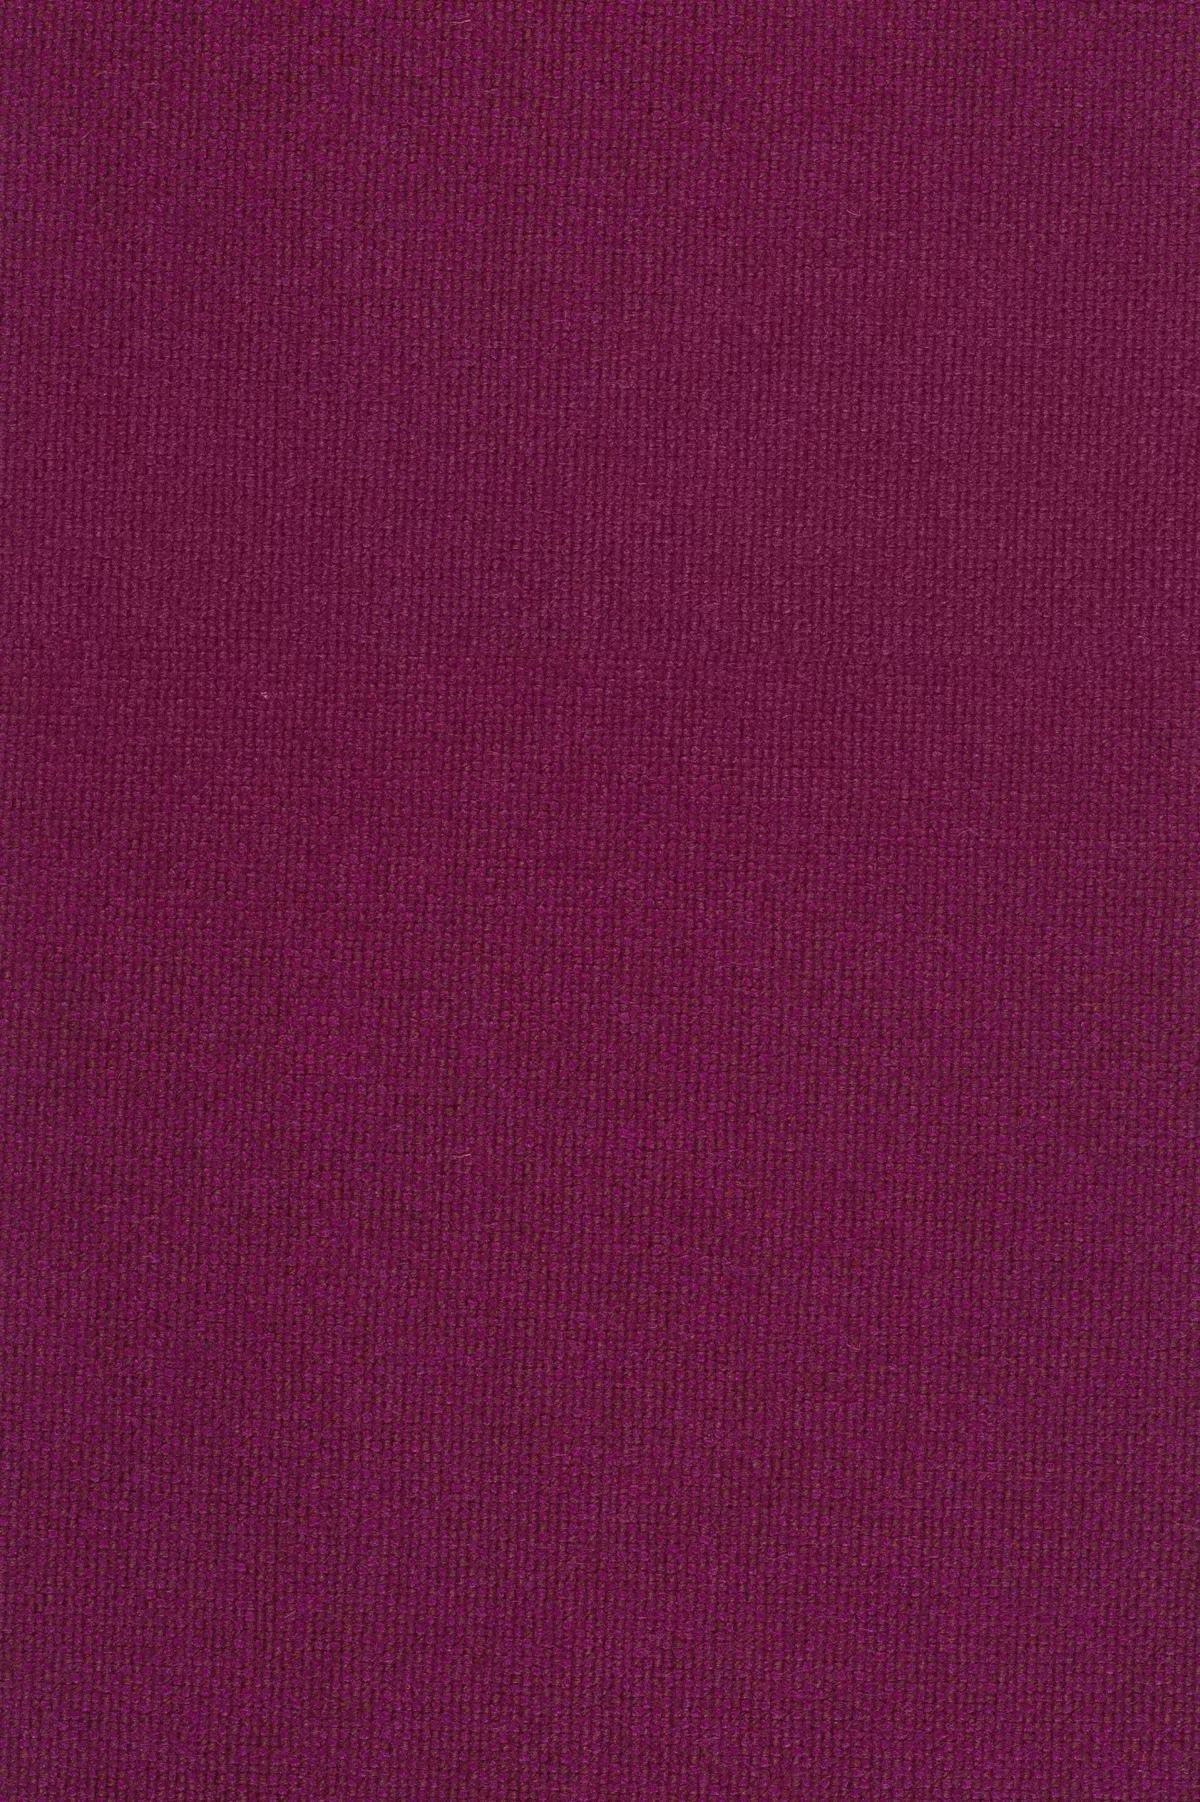 Fabric sample Hallingdal 65 573 purple